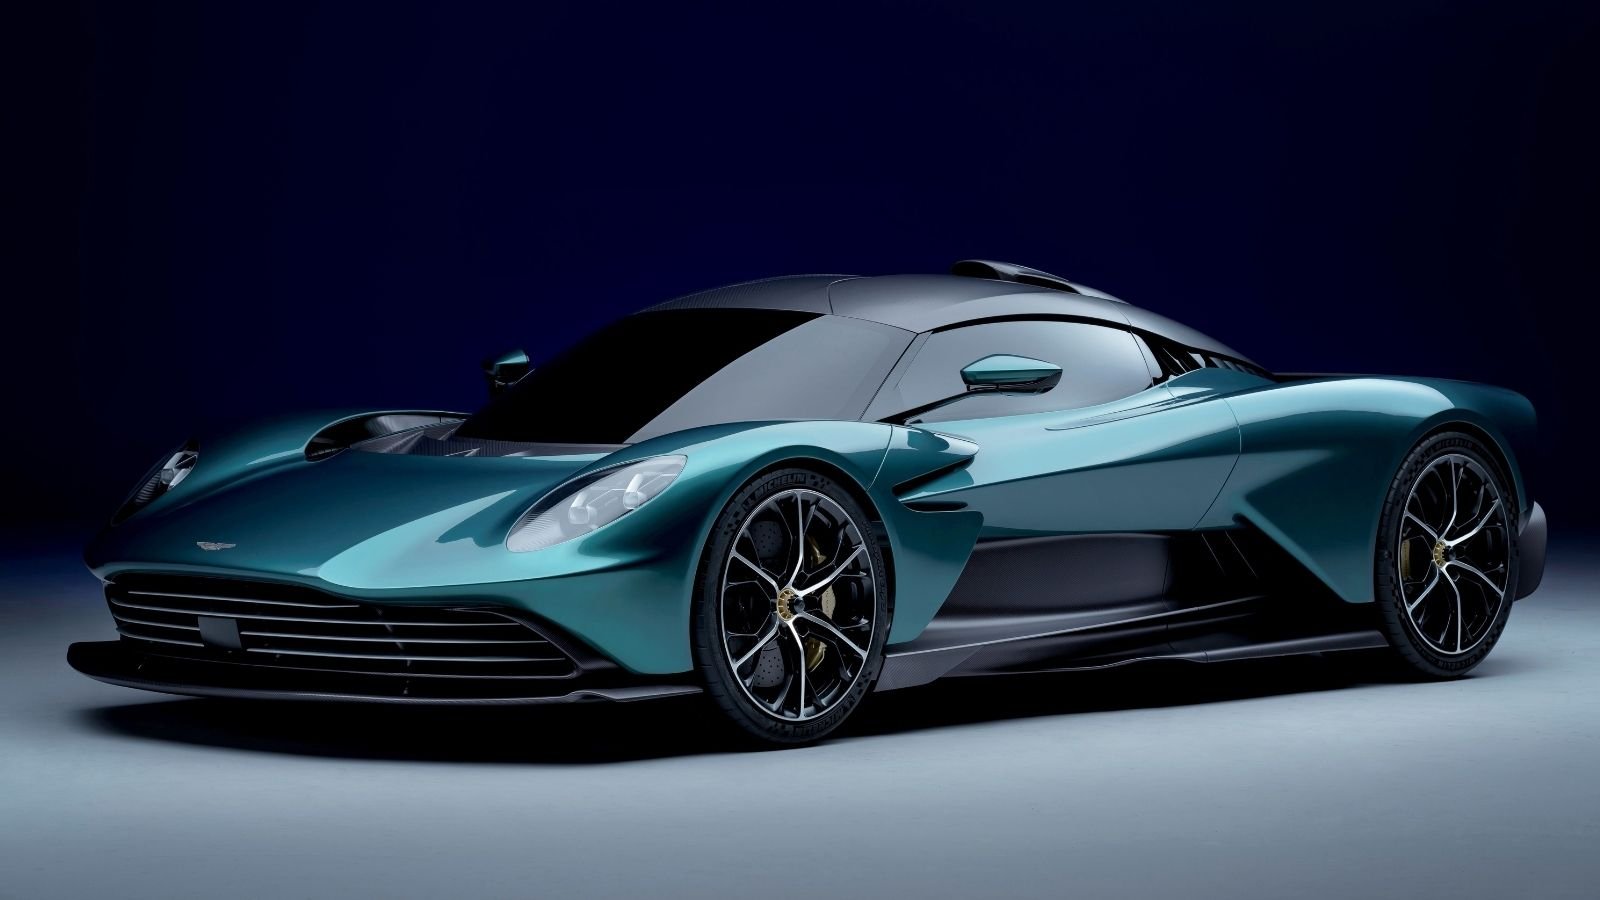 Dünyanın en özel bazı otomobil modellerine imza atan Aston Martin, gelen bilgilere göre ilk elektrikli aracını bir süre ertelemiş olacak. 